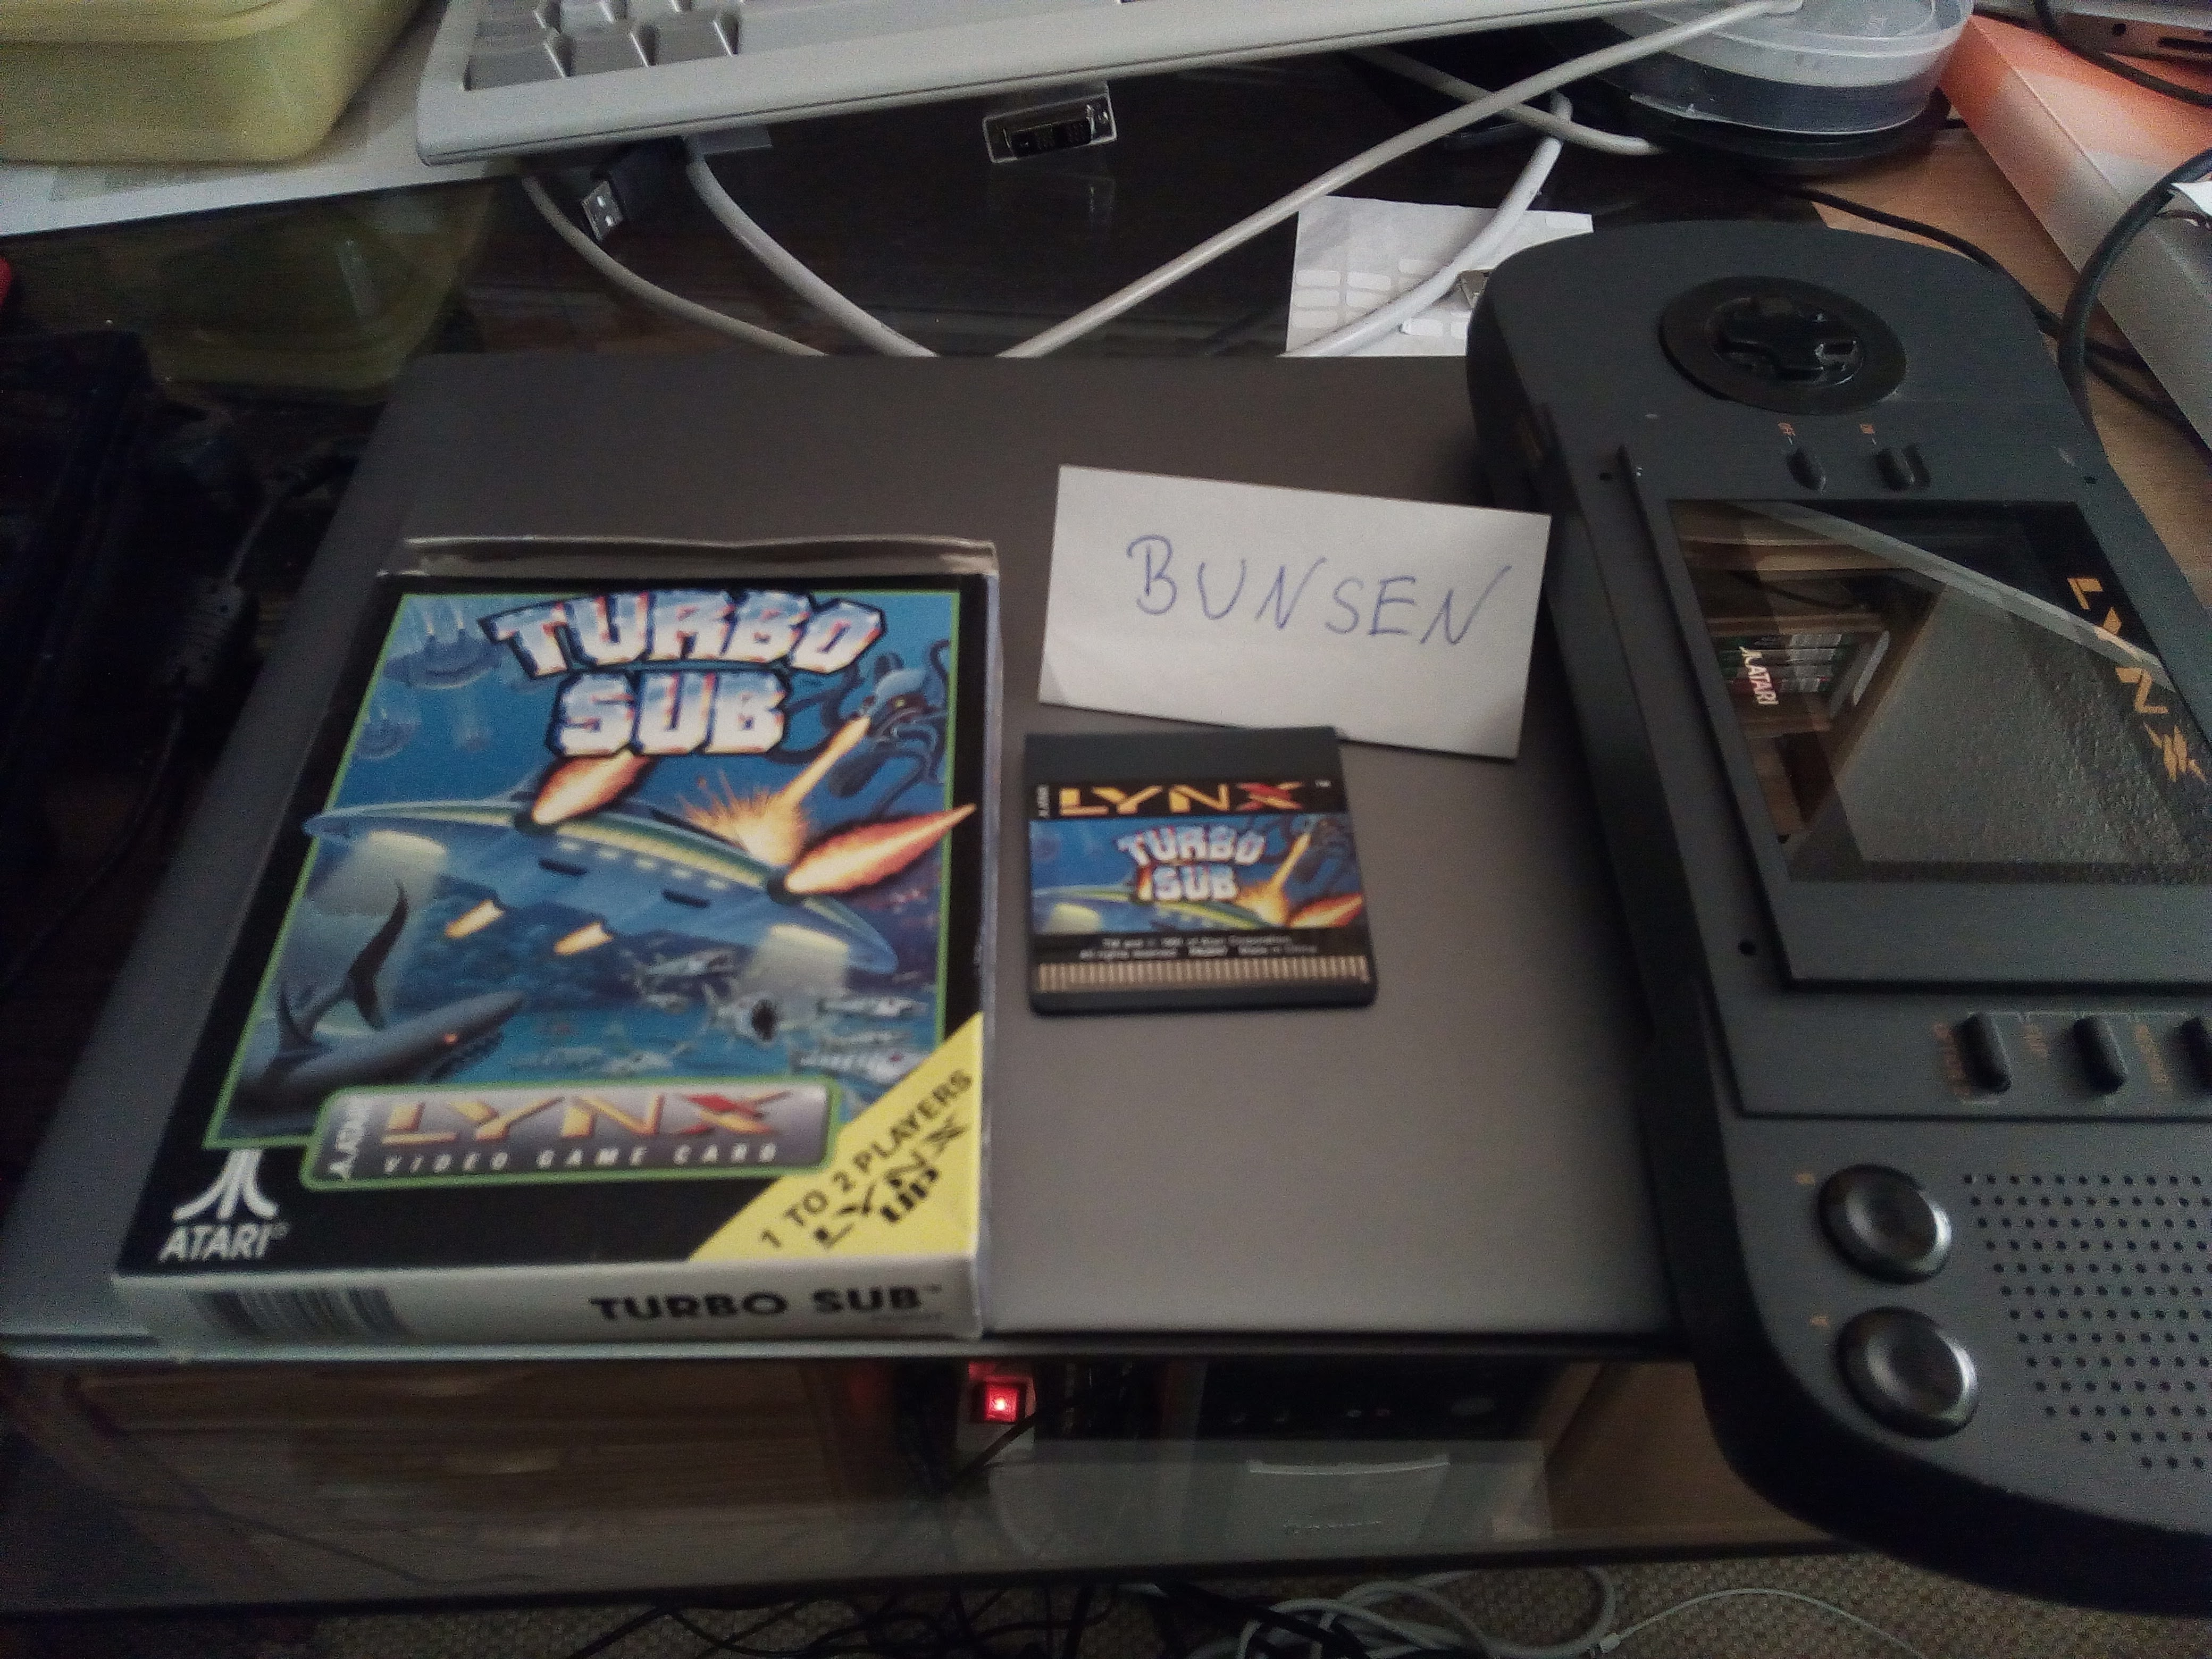 Bunsen: Turbo Sub (Atari Lynx) 9,200 points on 2021-05-02 13:41:01